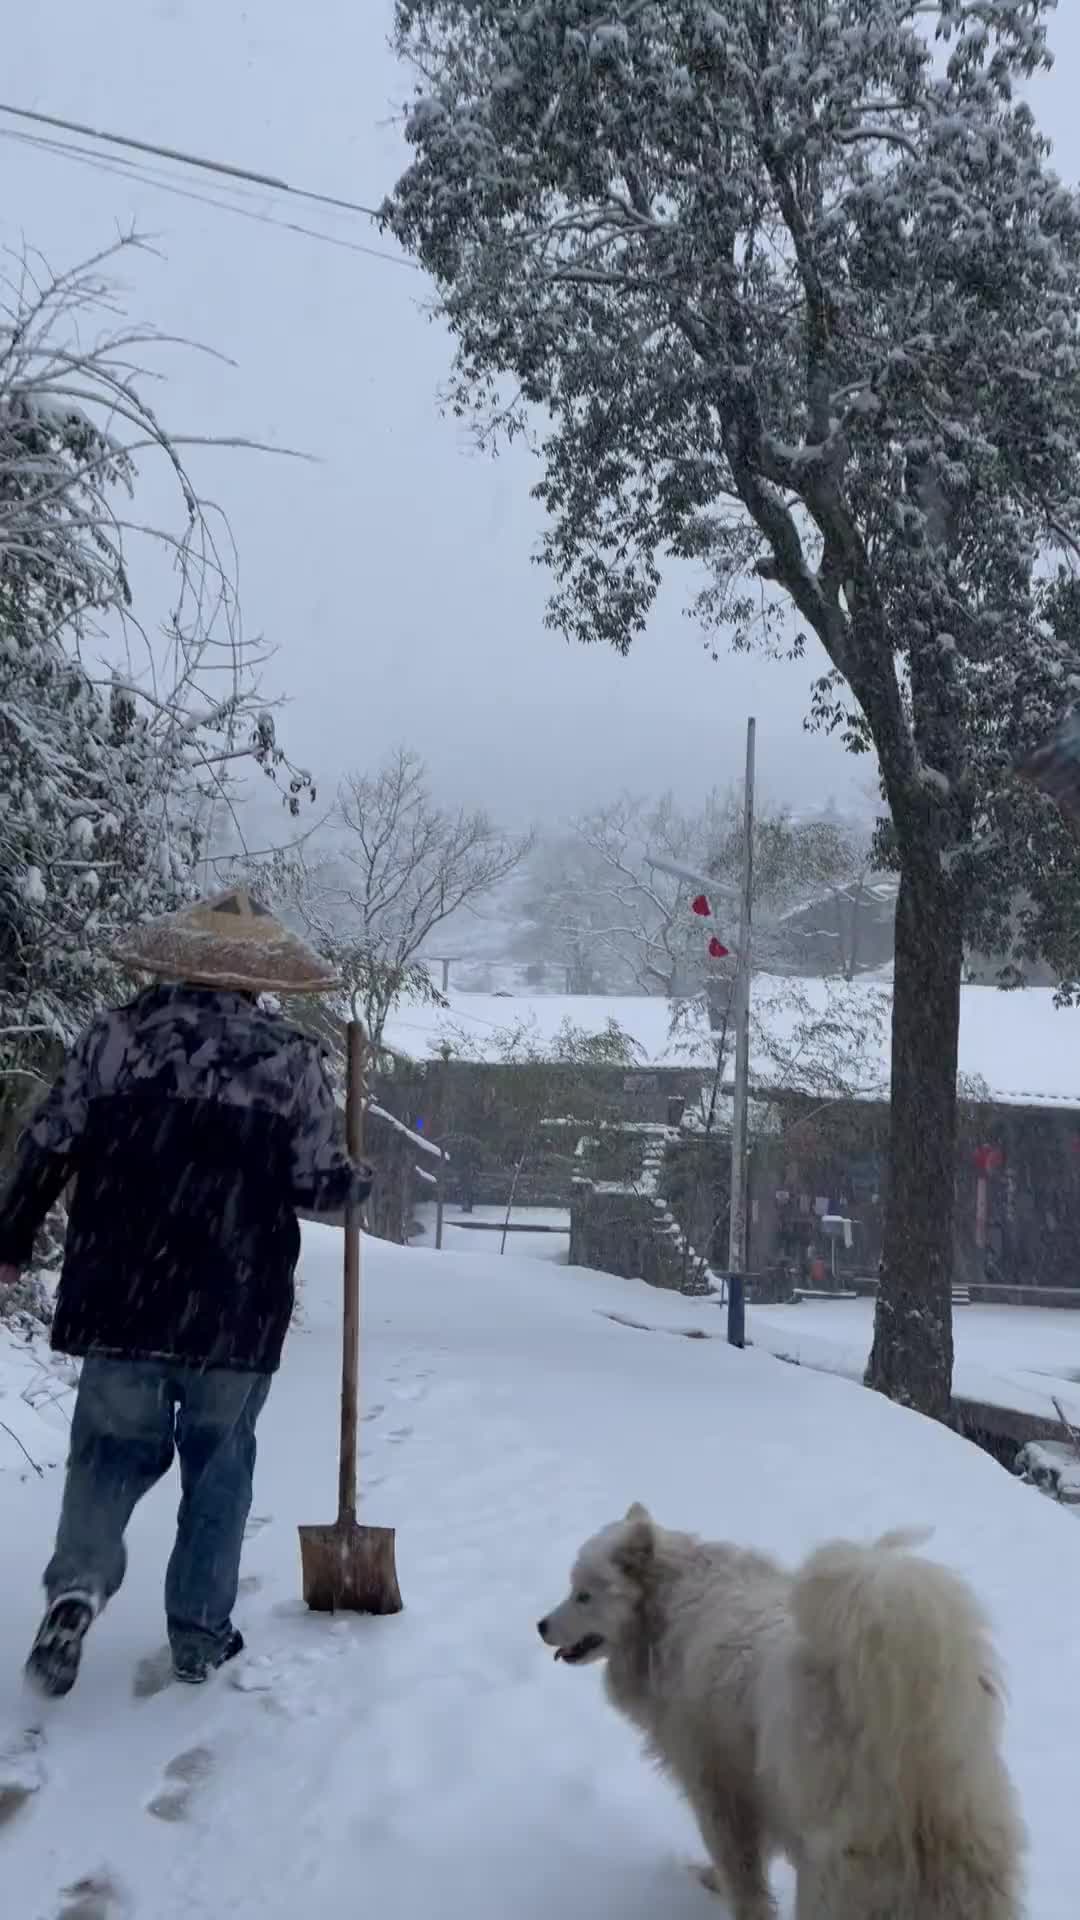 下雪的图片实景 农村图片